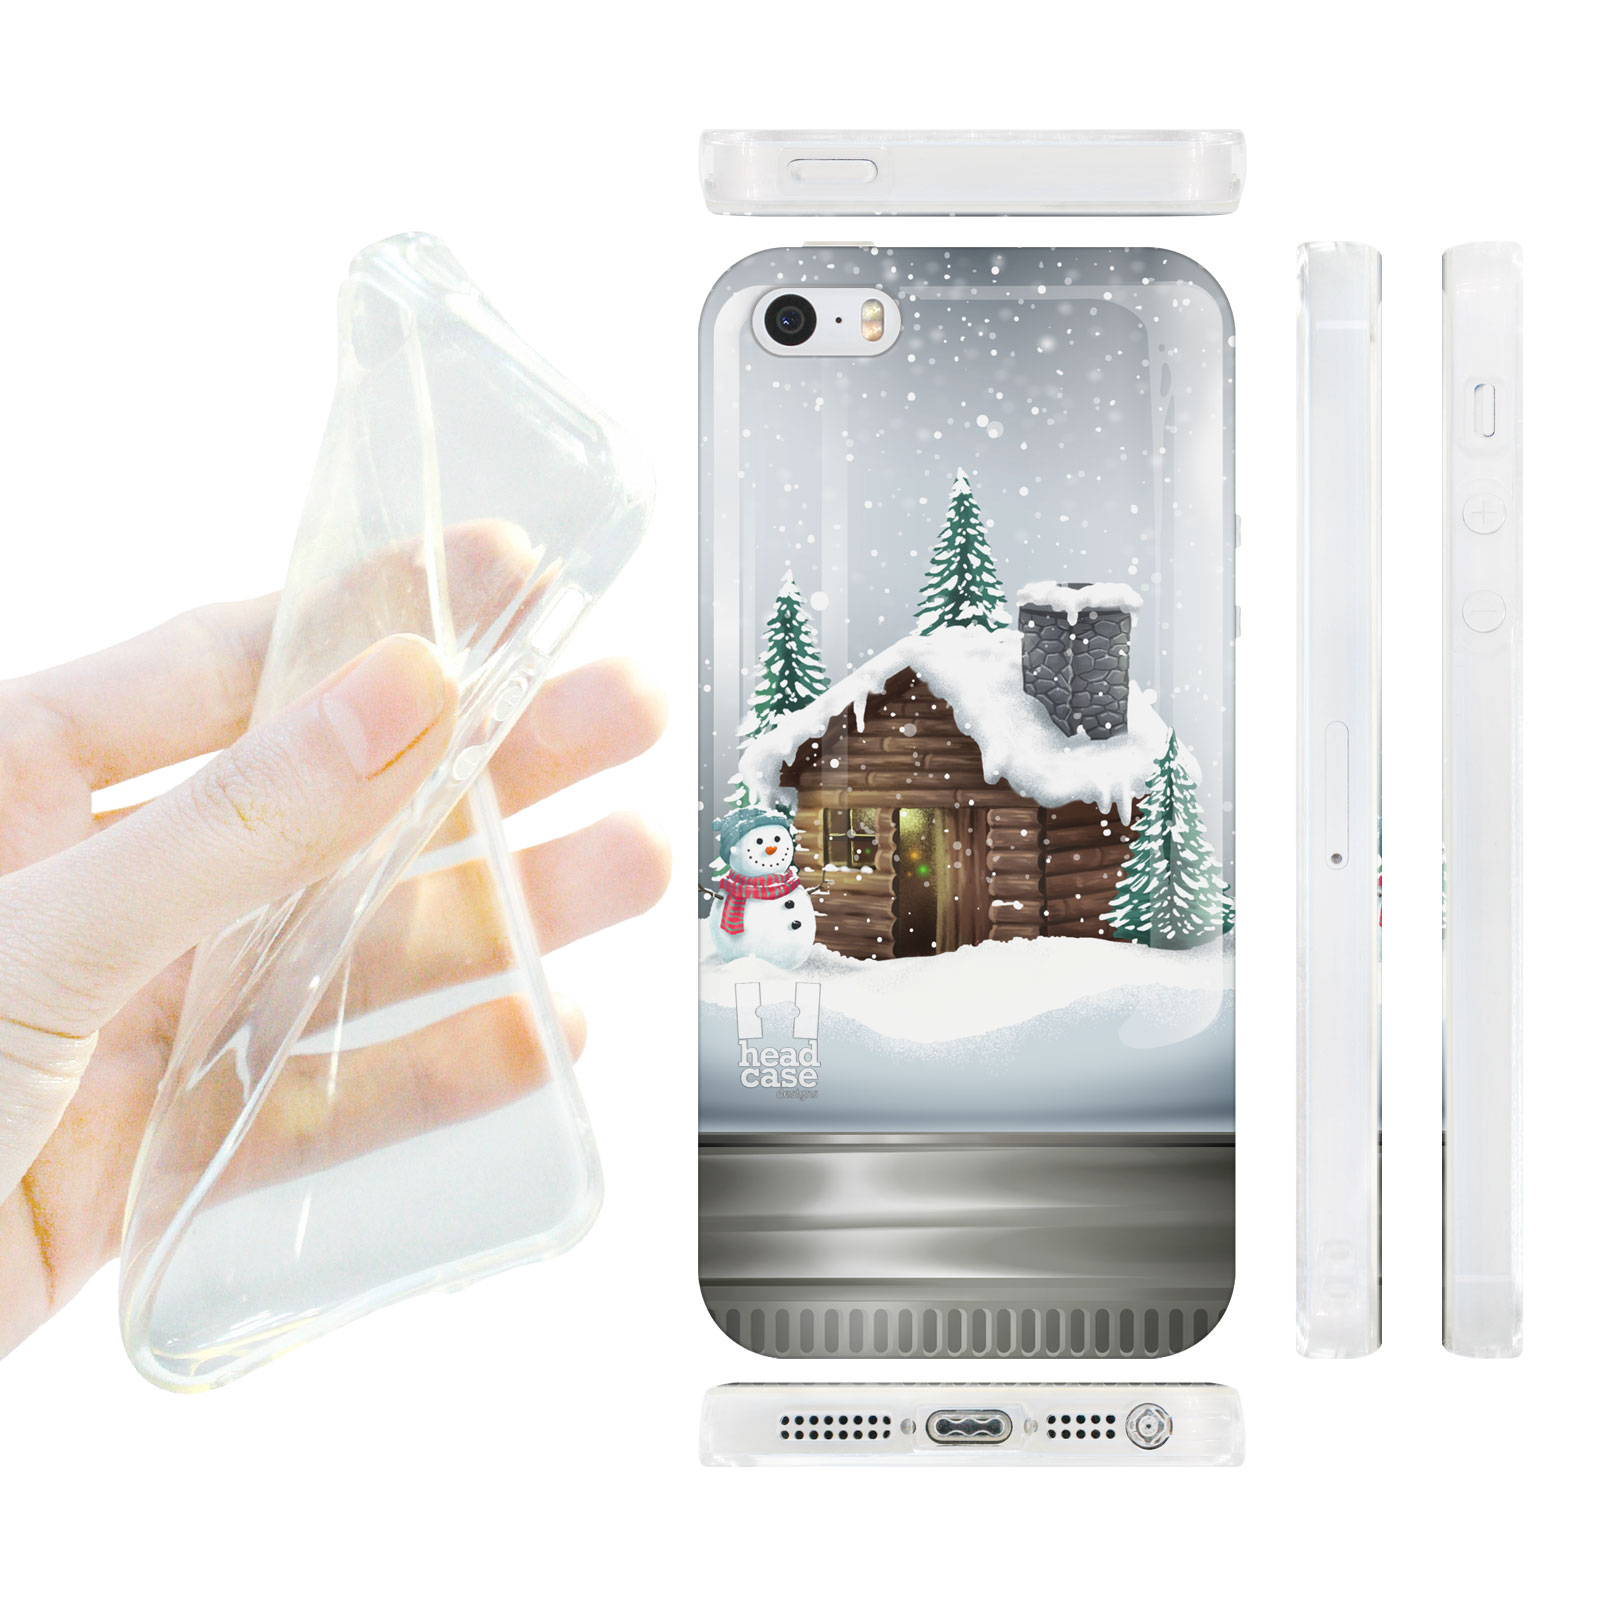 HEAD CASE silikonový obal na mobil Iphone 5/5S vánoční domeček skleněná koule